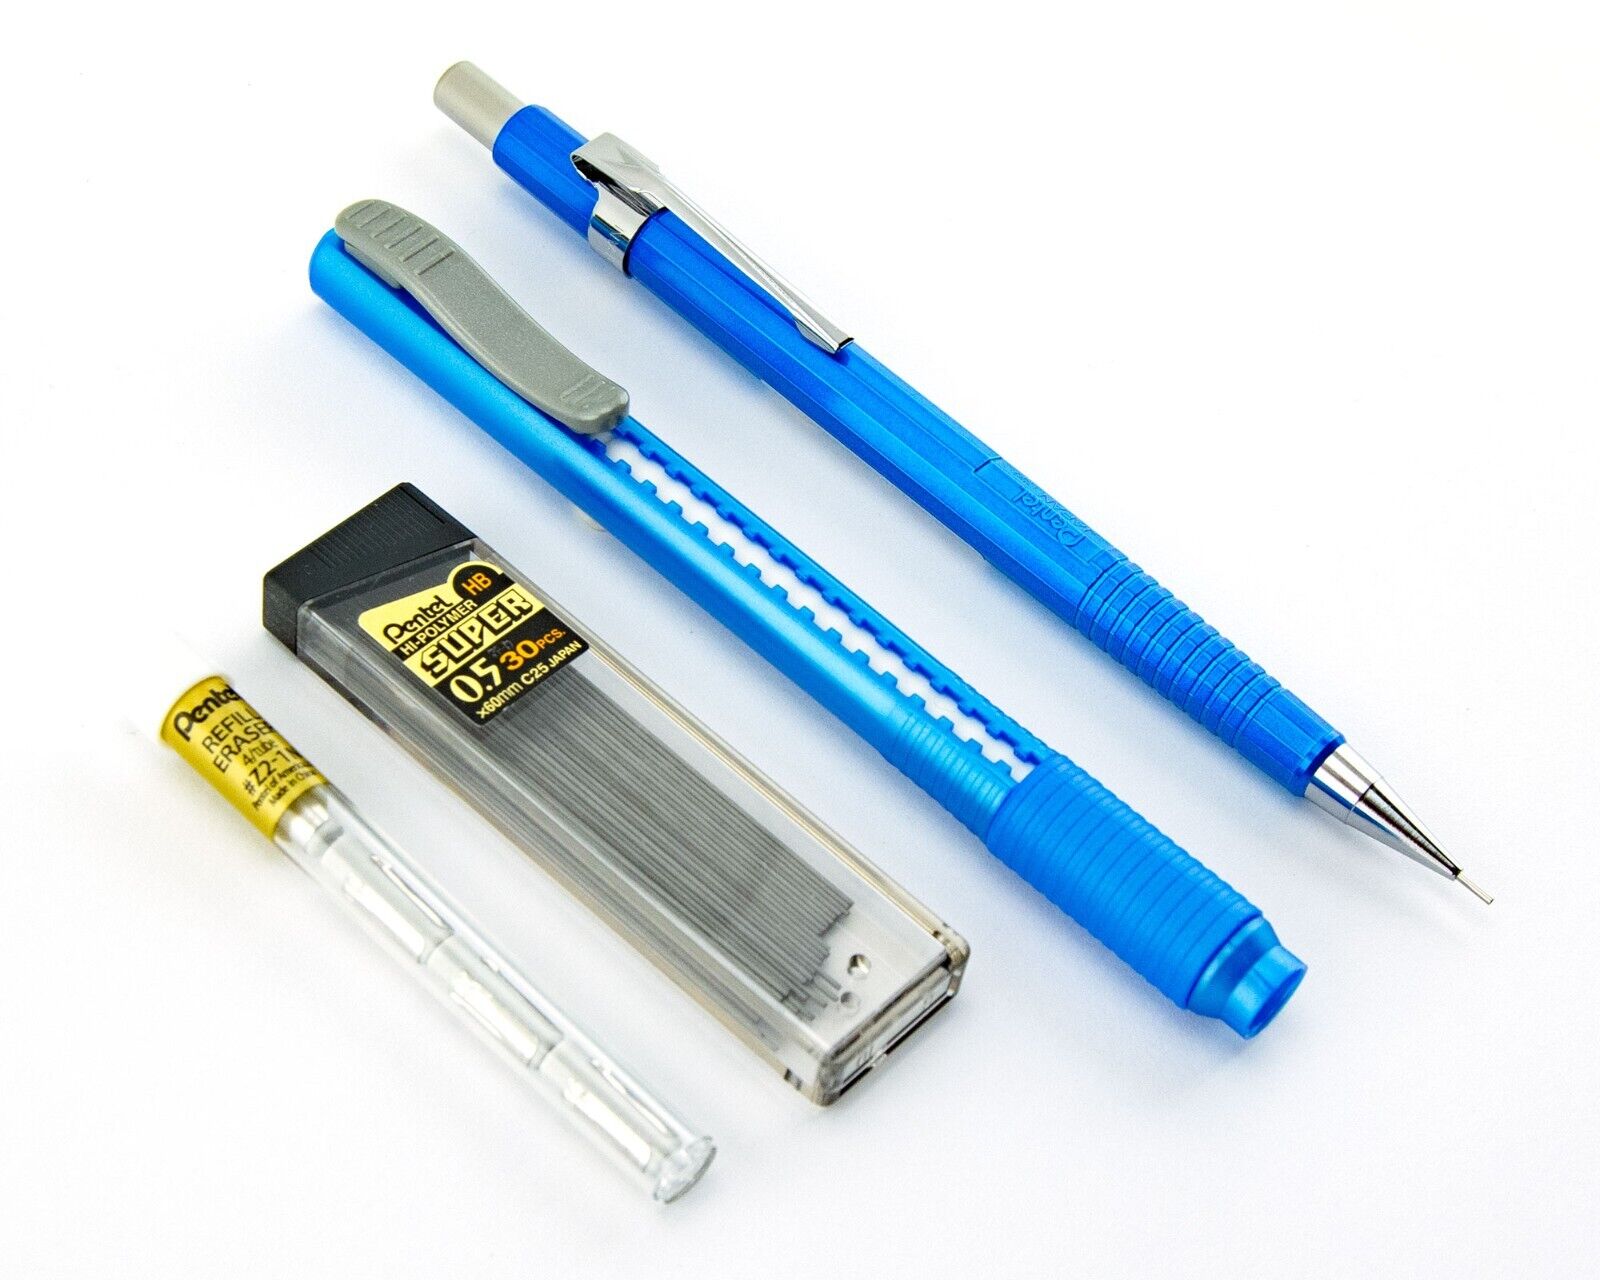 Pentel Sharp Mechanical Pencil Metallic Blue 0.5mm Refill Leads Clic Eraser Lot